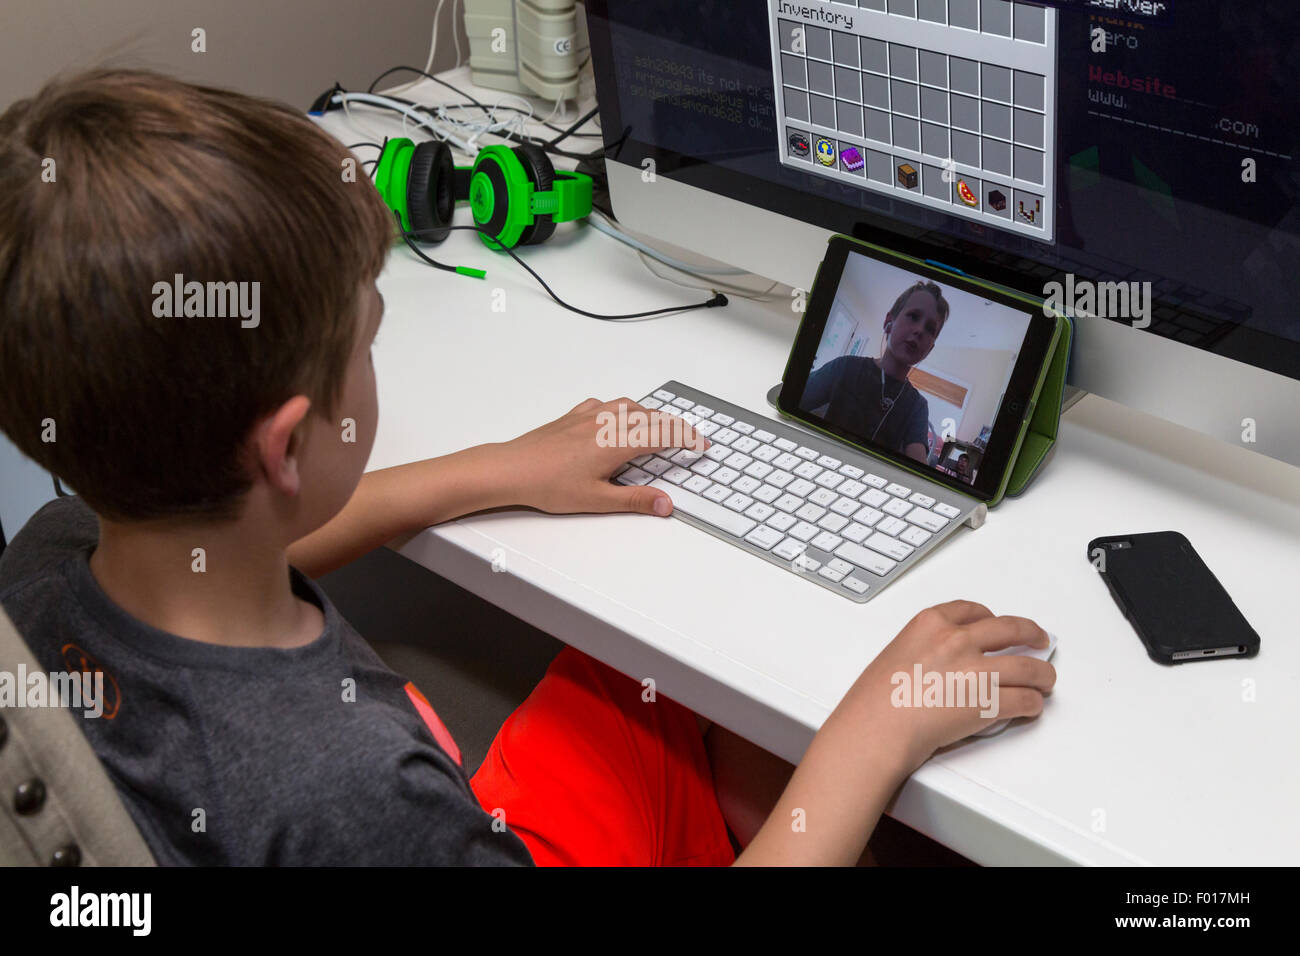 Deux jeunes garçons jouent à des jeux vidéo à longue distance, la communication via Facetime. M. Banque D'Images